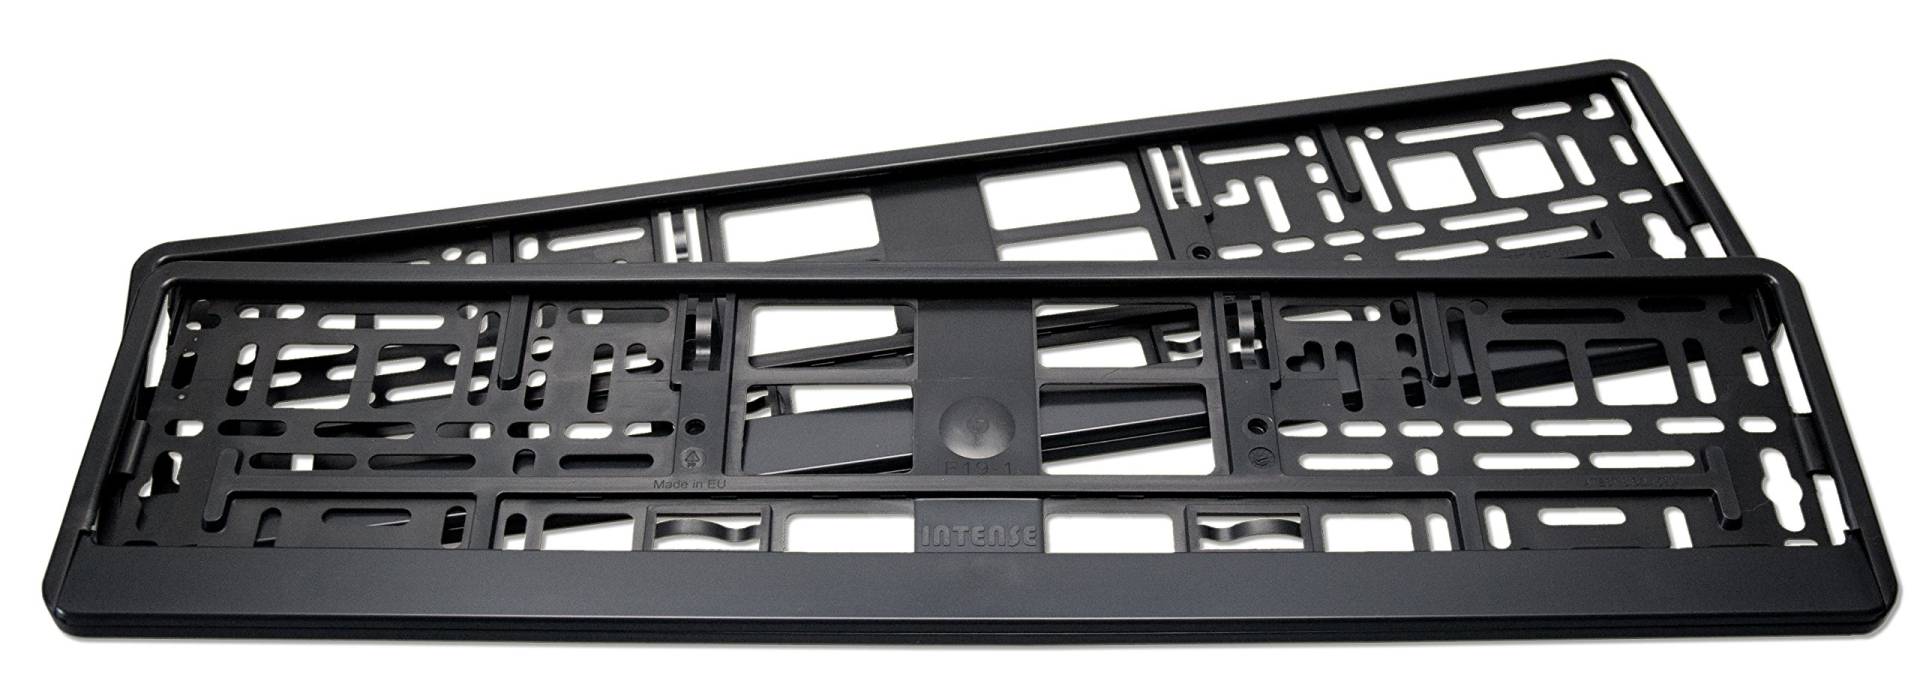 2er Set Kennzeichenhalter matt schwarz, passend für deutsche EU Standard Kennzeichen 520 x 110 mm. von Magenton-Intense